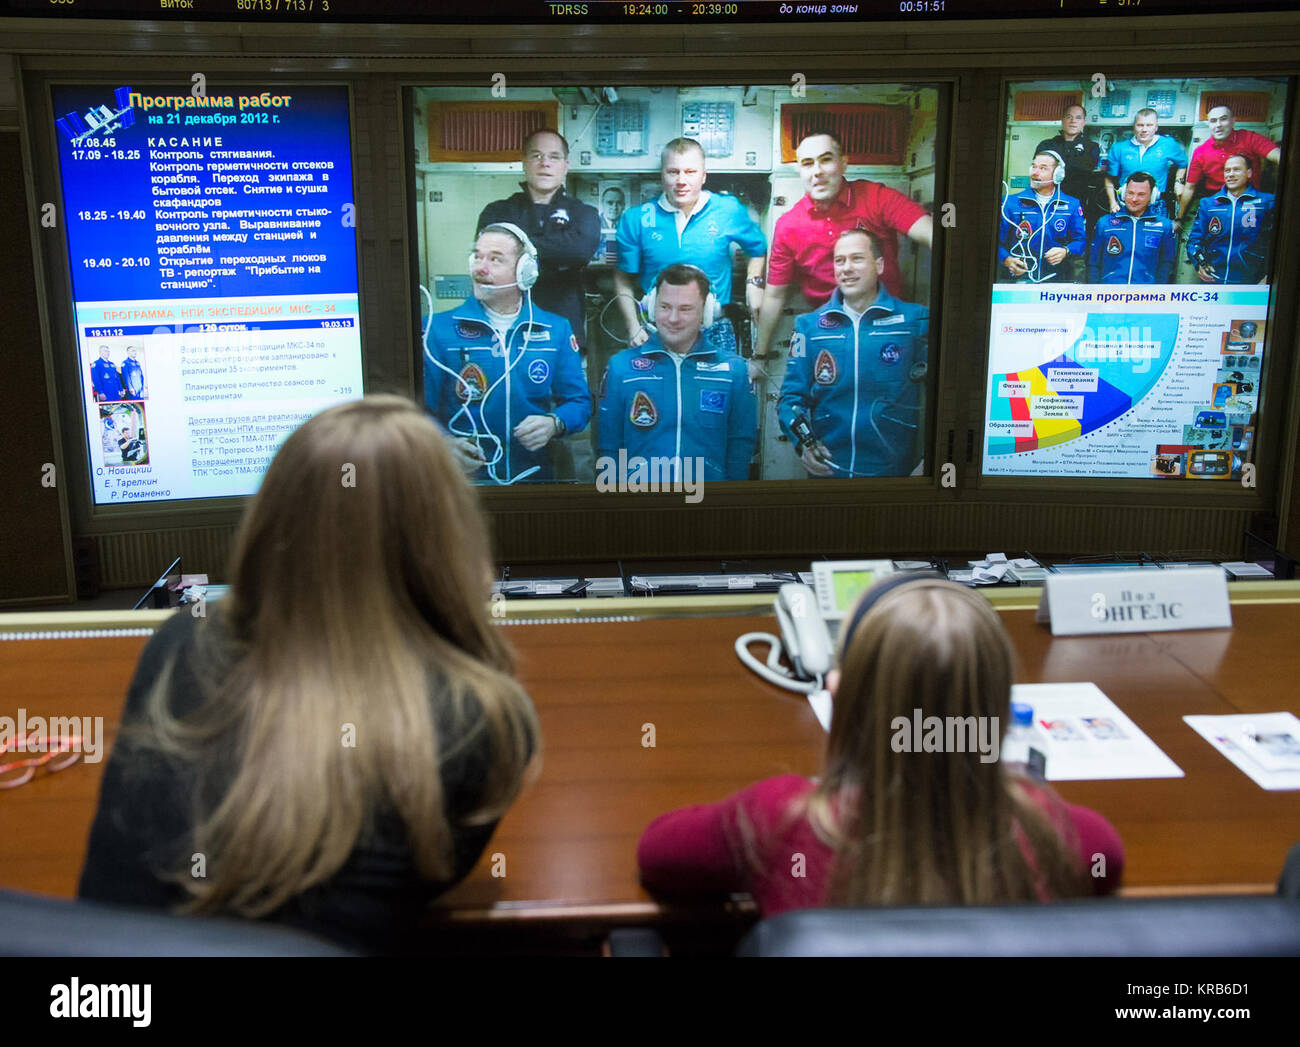 Nouveaux membres de l'équipage Expedition 34/35, l'astronaute Chris Hadfield, avant gauche, le cosmonaute russe Roman Romanenko et l'astronaute de la NASA Tom Marshburn, avant droit, sont vus sur un écran à la Fédération de centre de contrôle de mission de Korolev, Russie peu de temps après l'expédition du commandant 34 trois rejoint Kevin Ford de la NASA, l'arrière gauche, et ingénieurs de vol Oleg Novitski et Evgeny Tarelkin, le dos droit, de la Russie, le vendredi 21 Décembre, 2012. Crédit photo : NASA/Carla Cioffi) Soyouz TMA-07M crew des pourparlers avec la Fédération Mission Control Banque D'Images